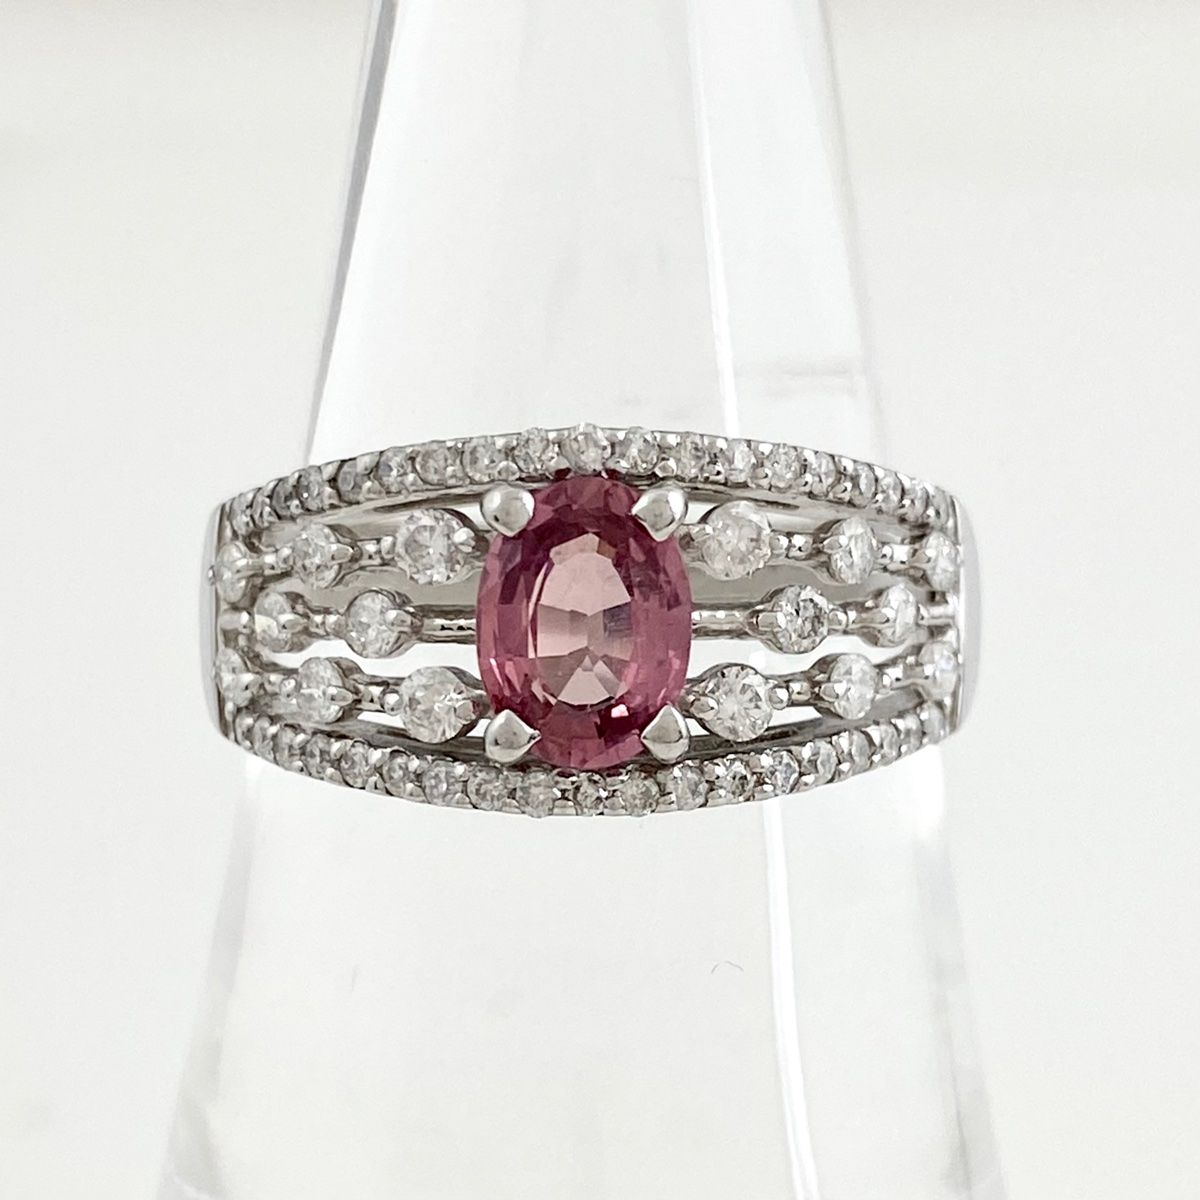 パパラチアサファイア デザインリング プラチナ 指輪 メレダイヤ